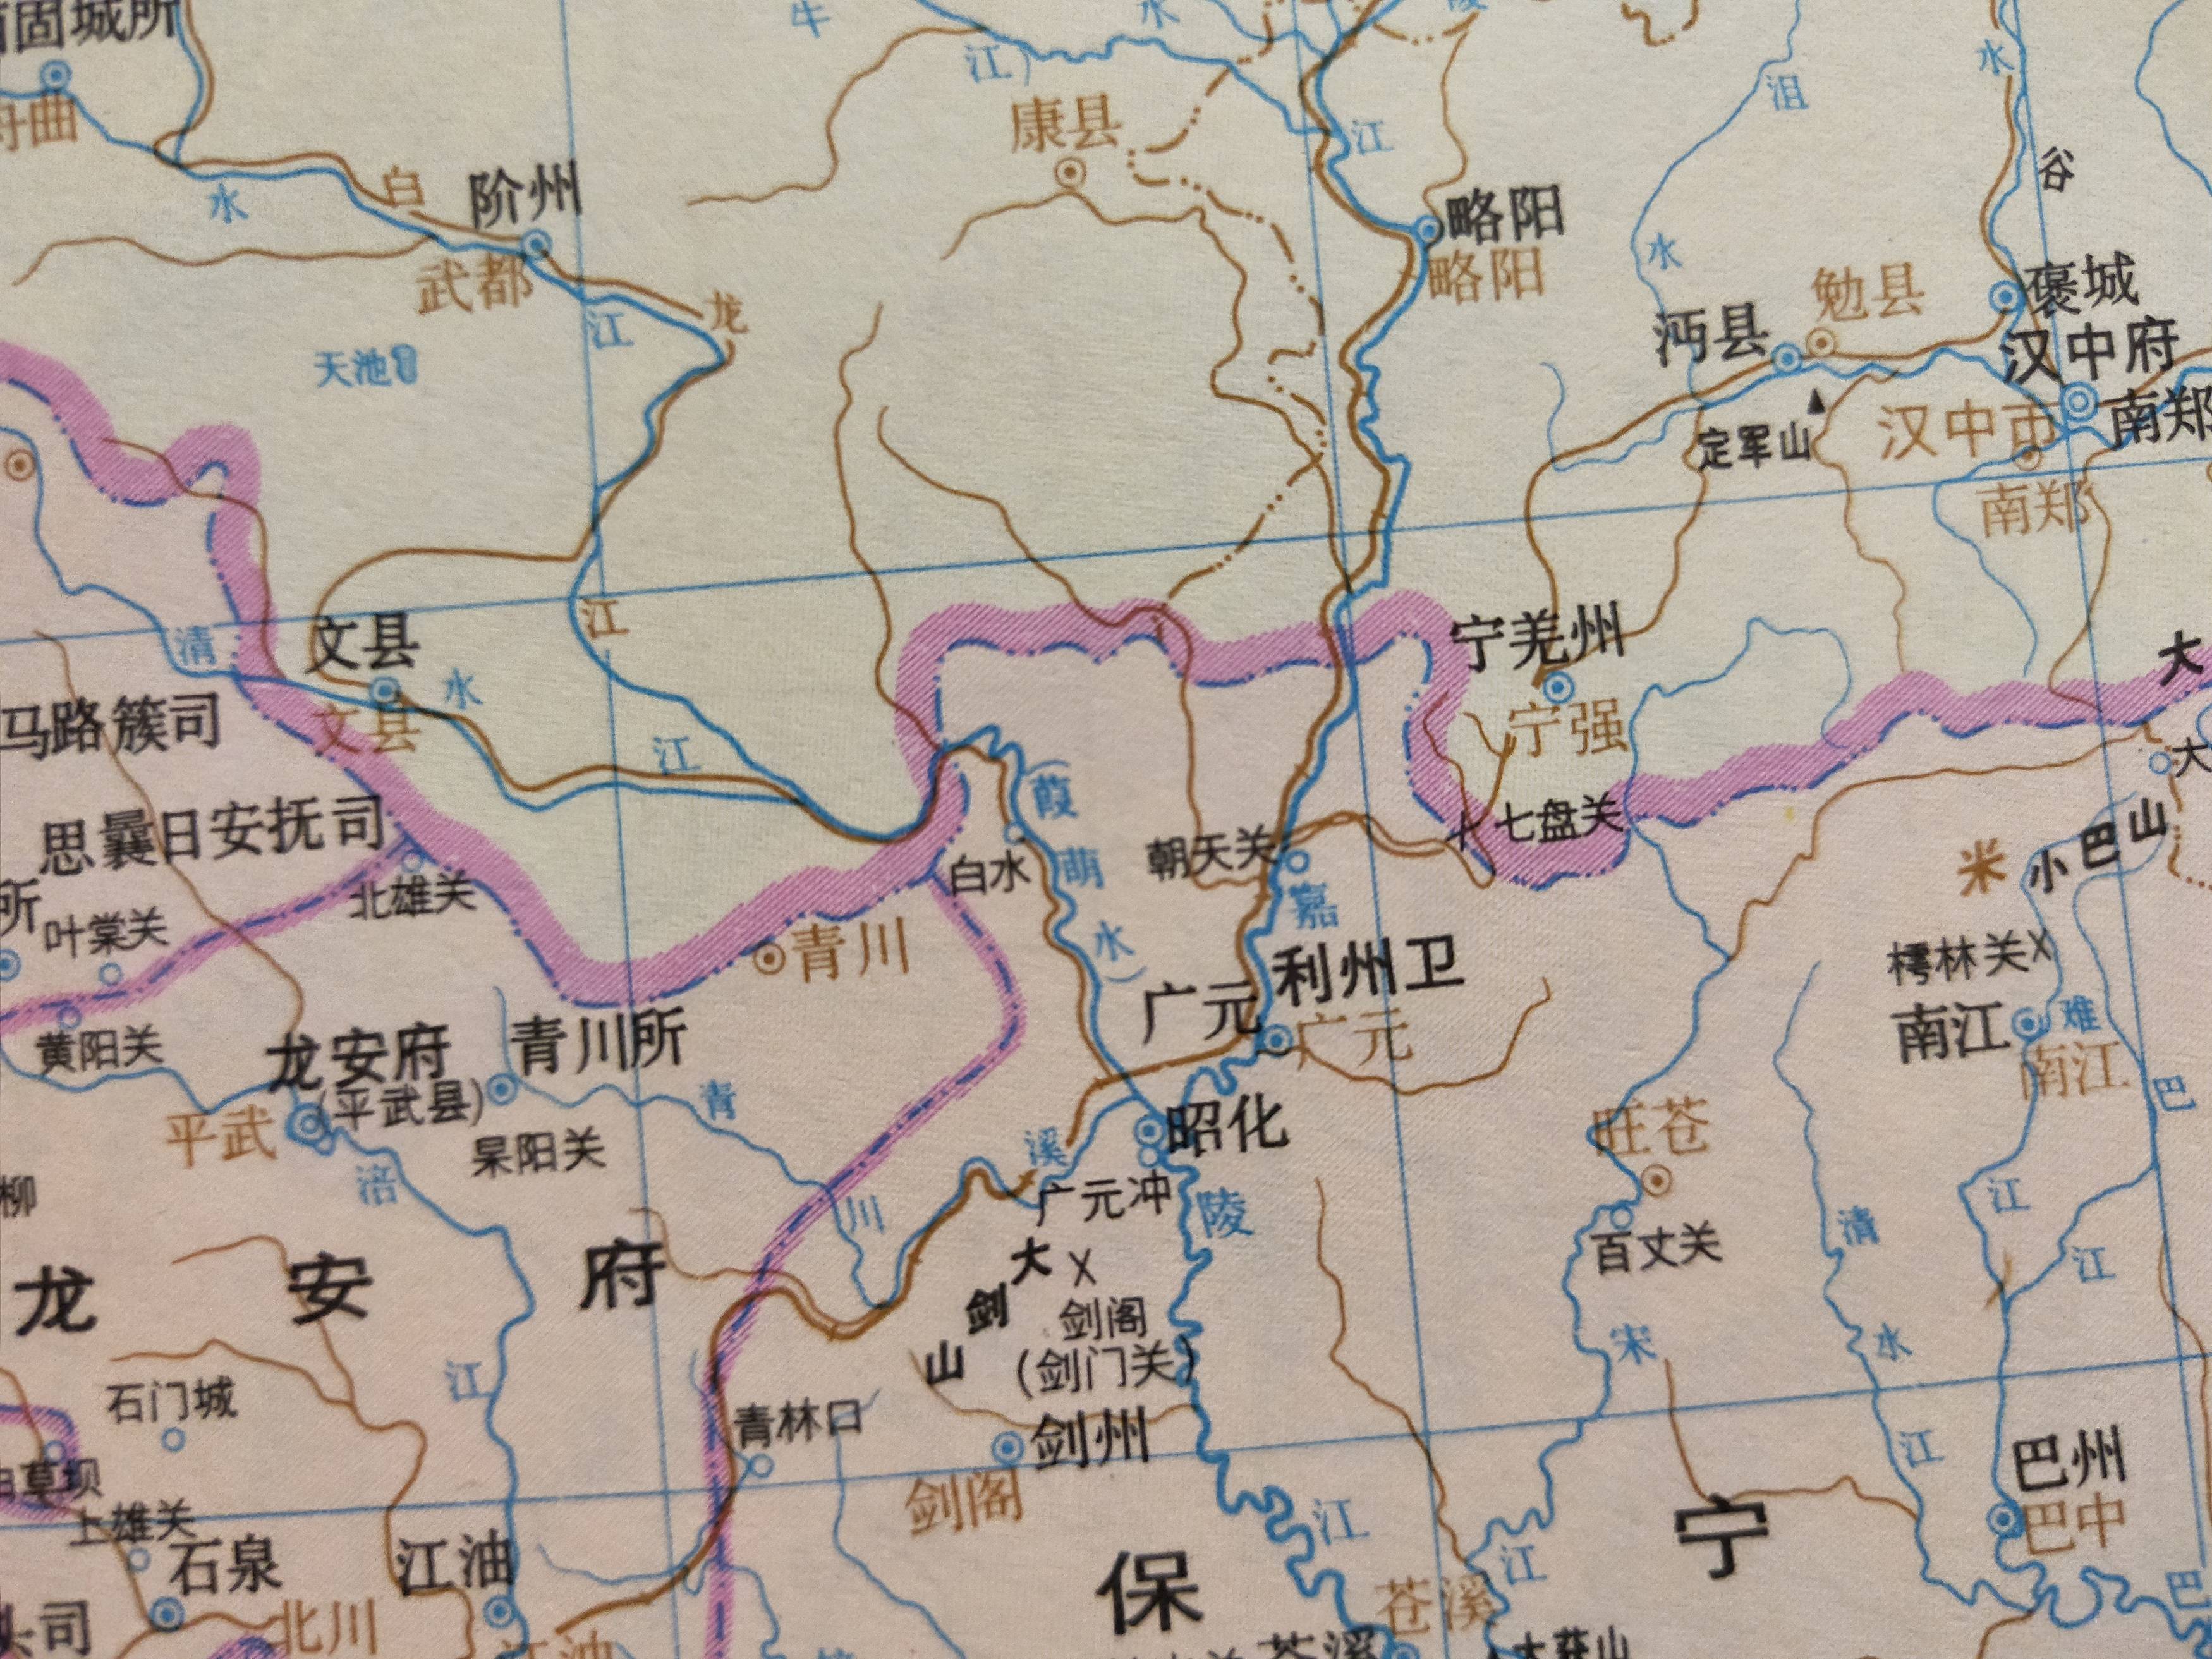 明四川保宁府利州卫明代初期,对前代的行省边界进行了一定程度的调整